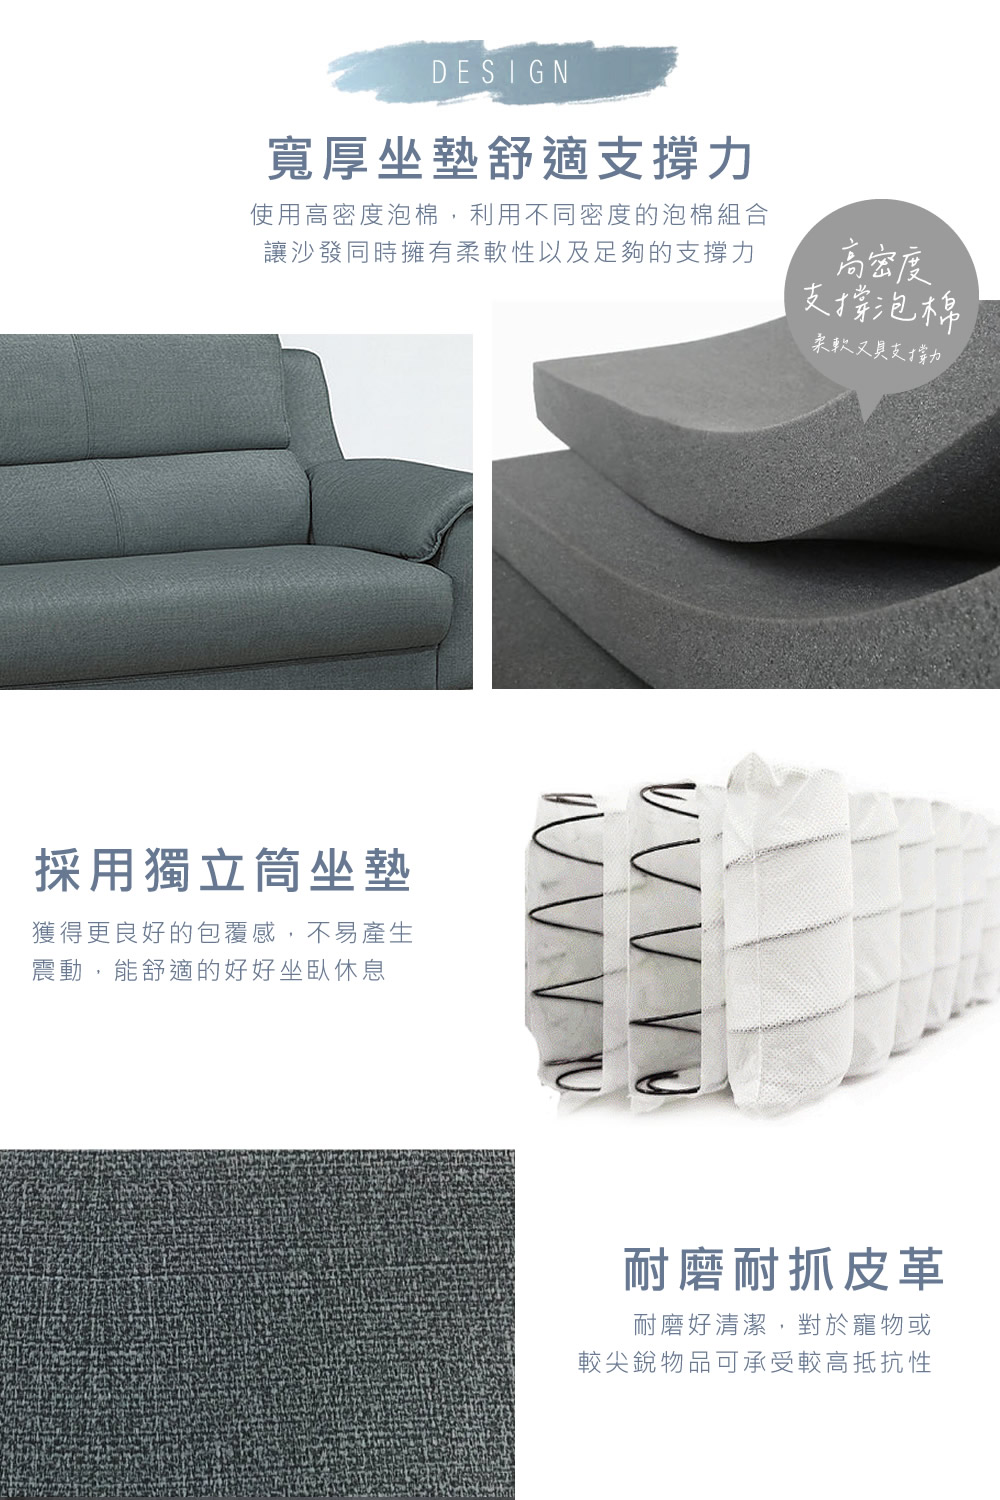 NEX 簡約時尚 雙人座/兩人座 耐抓皮 拿鐵深灰色沙發(皮